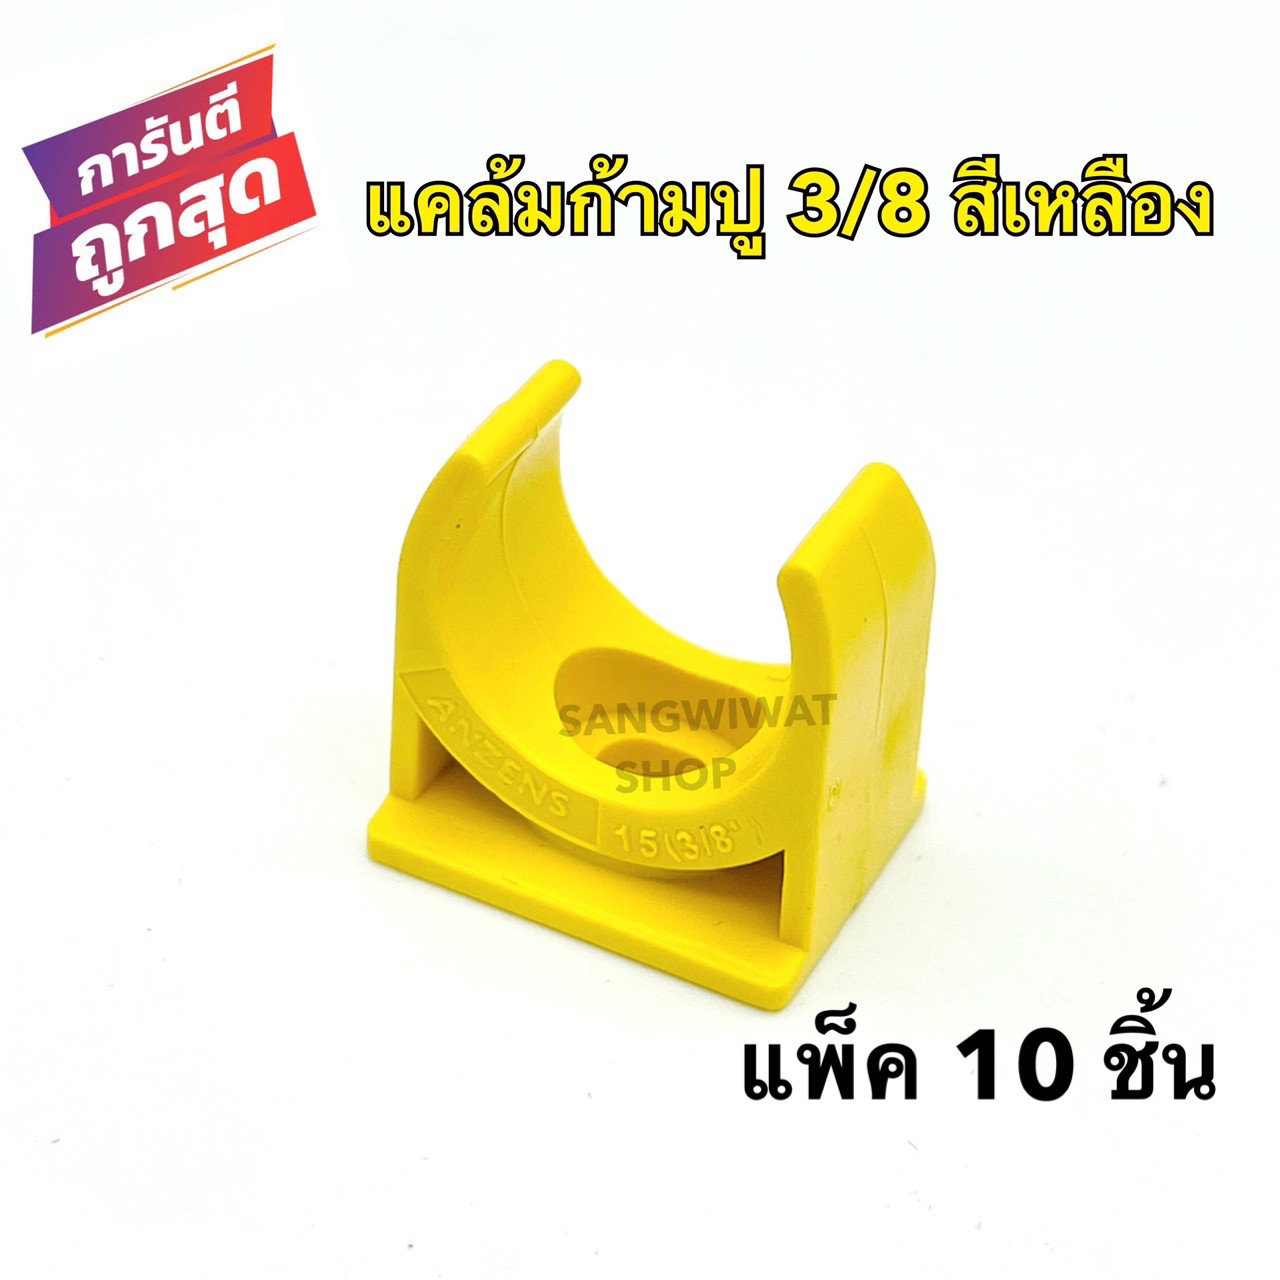 แคล้มก้ามปู 3/8 สีเหลือง คลิปก้ามปู PVC 3/8หุน สีเหลือง (แพ็ค 10 ชิ้น) แคล้มรัดท่อPVC กิ๊บจับท่อ